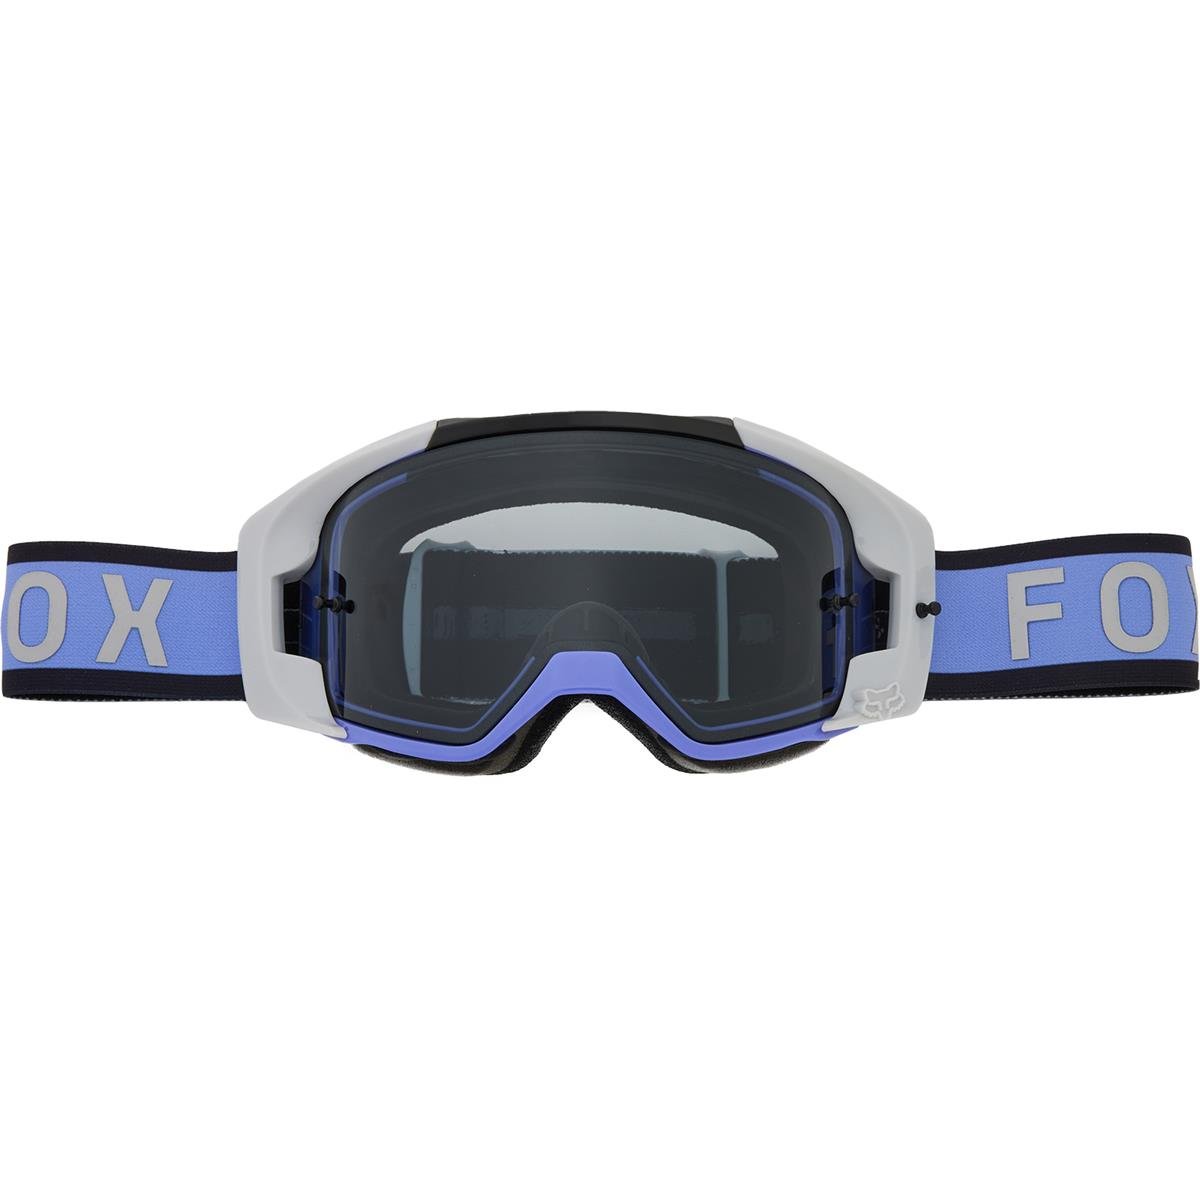 Fox Crossbrille Vue Magnetic - Smoke - Black/Purple, Non-Mirrored